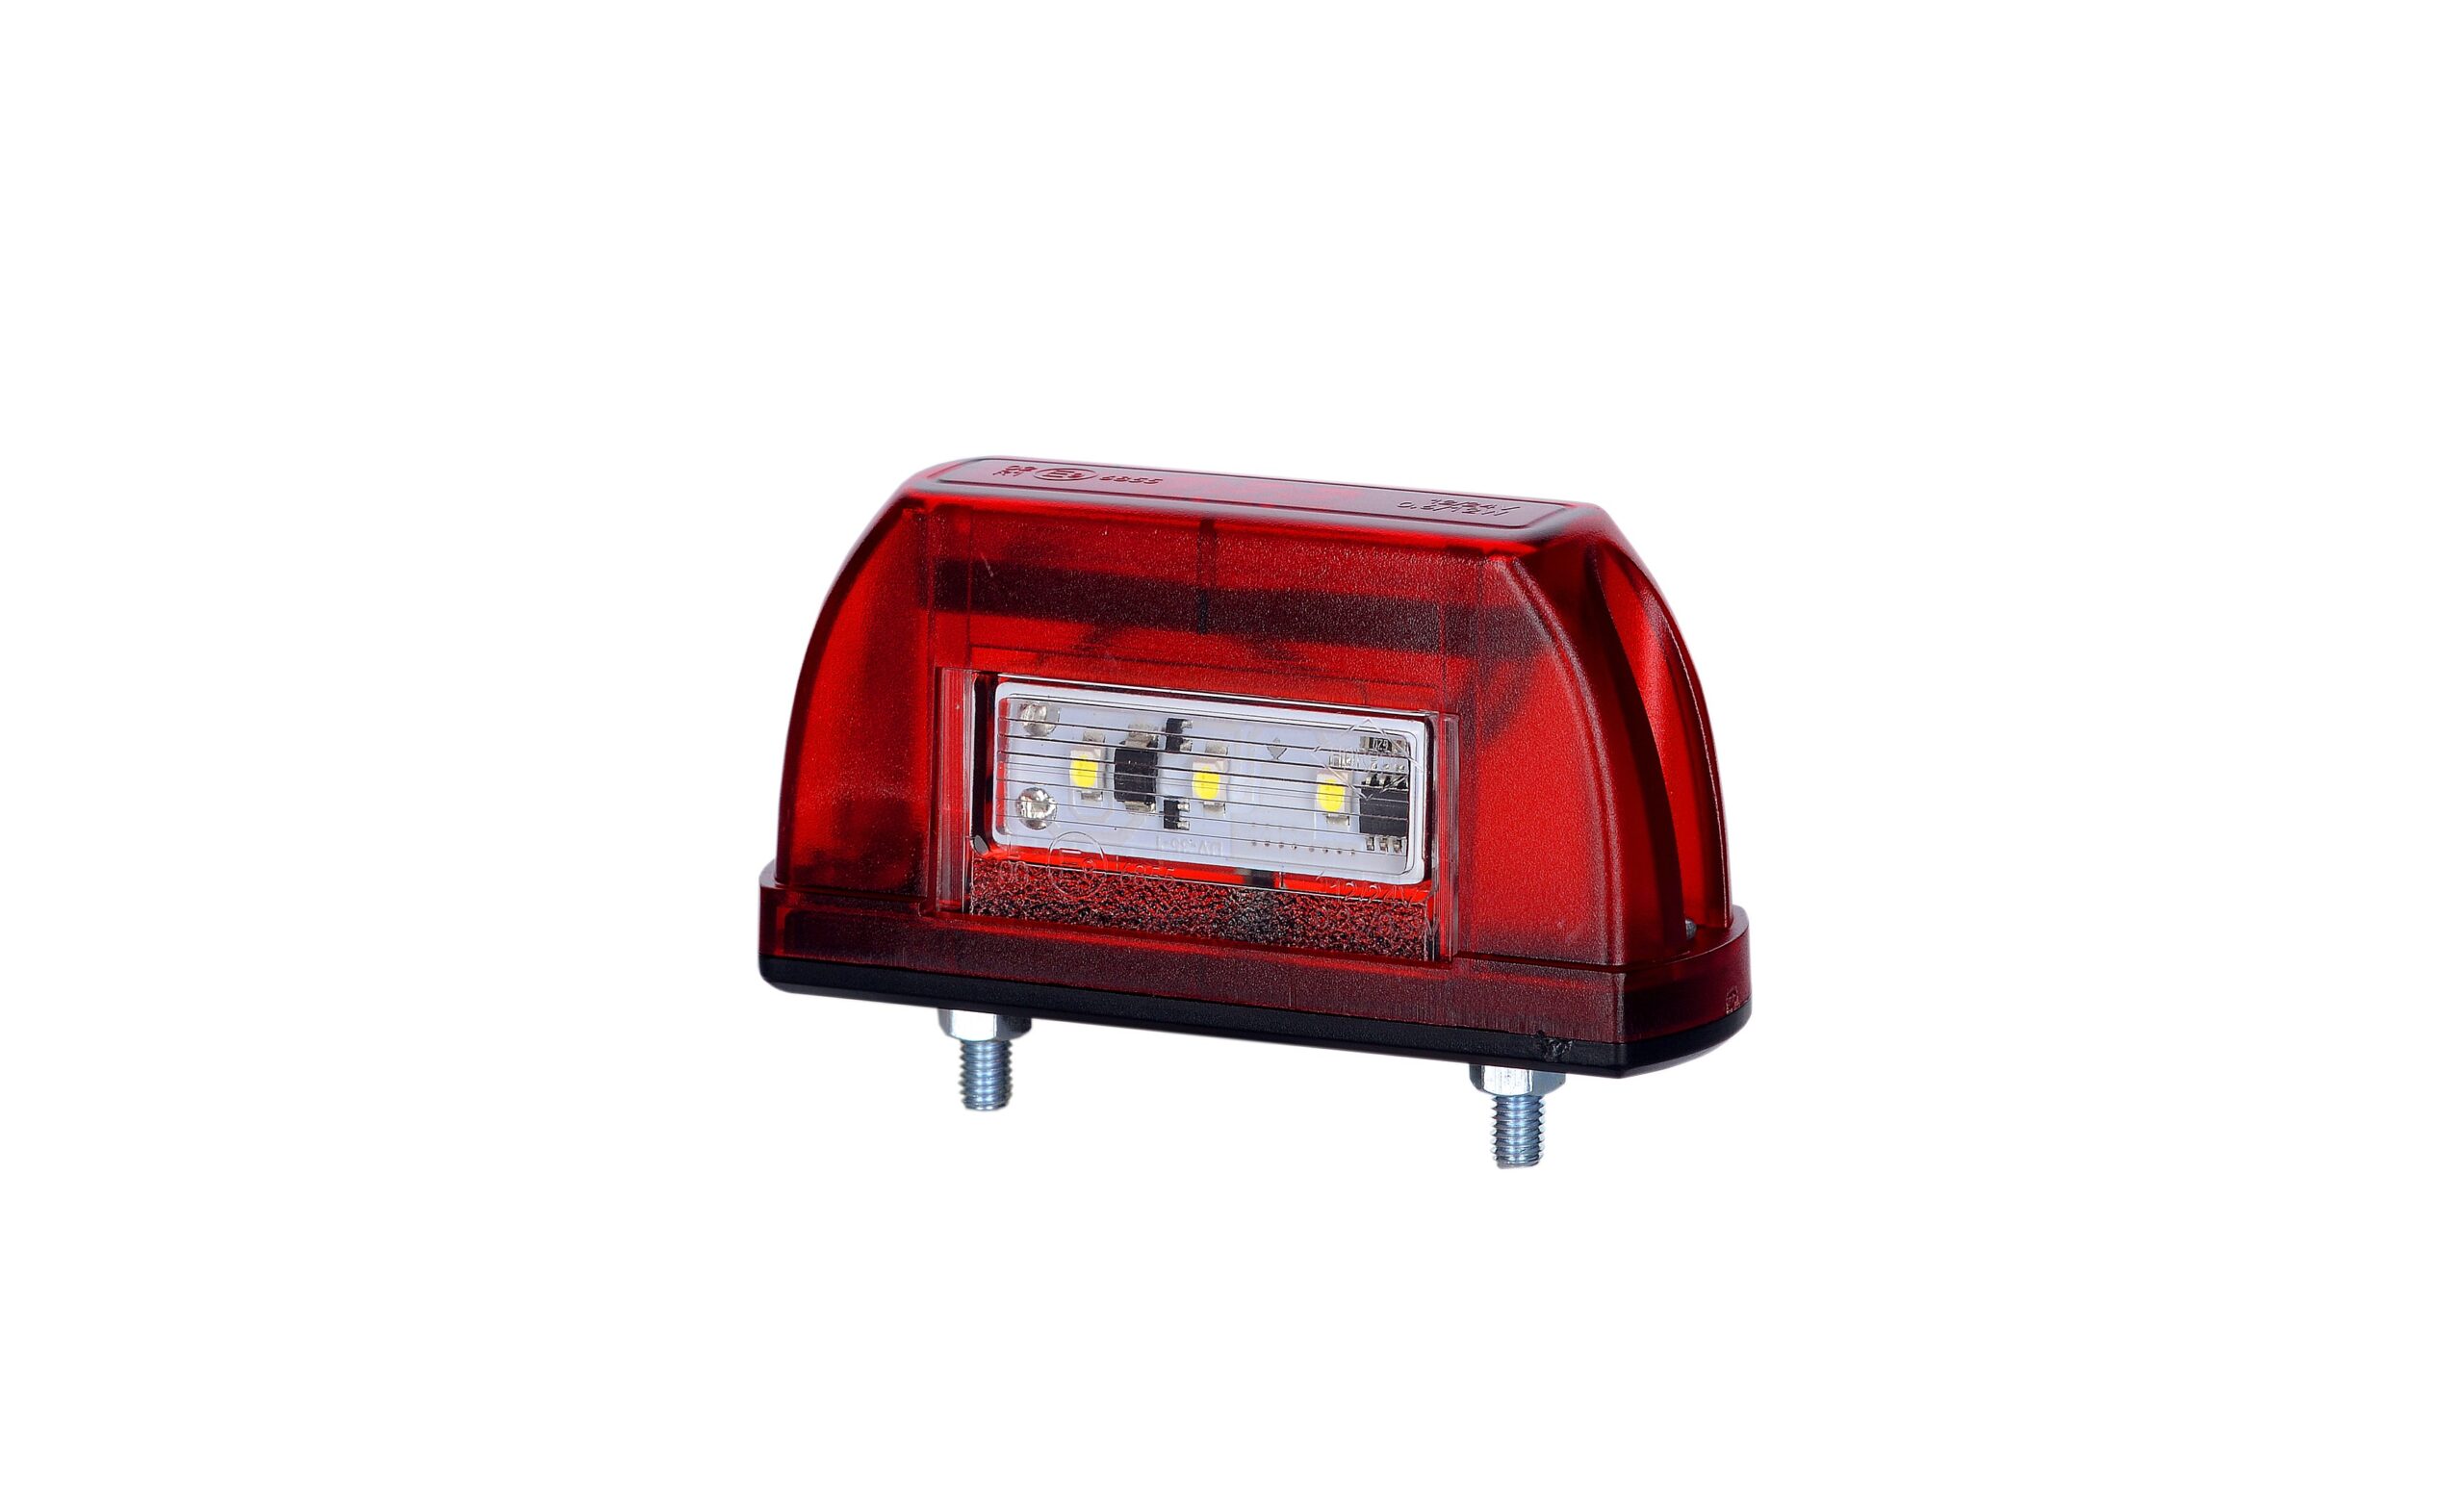 Lămpi iluminare plăcuță de înmatriculare - Lampă mică stop și iluminare plăcuță înmatriculare, Horpol, LED, culoare alb-roșu, alimentare 12/24V, fomcoshop.ro